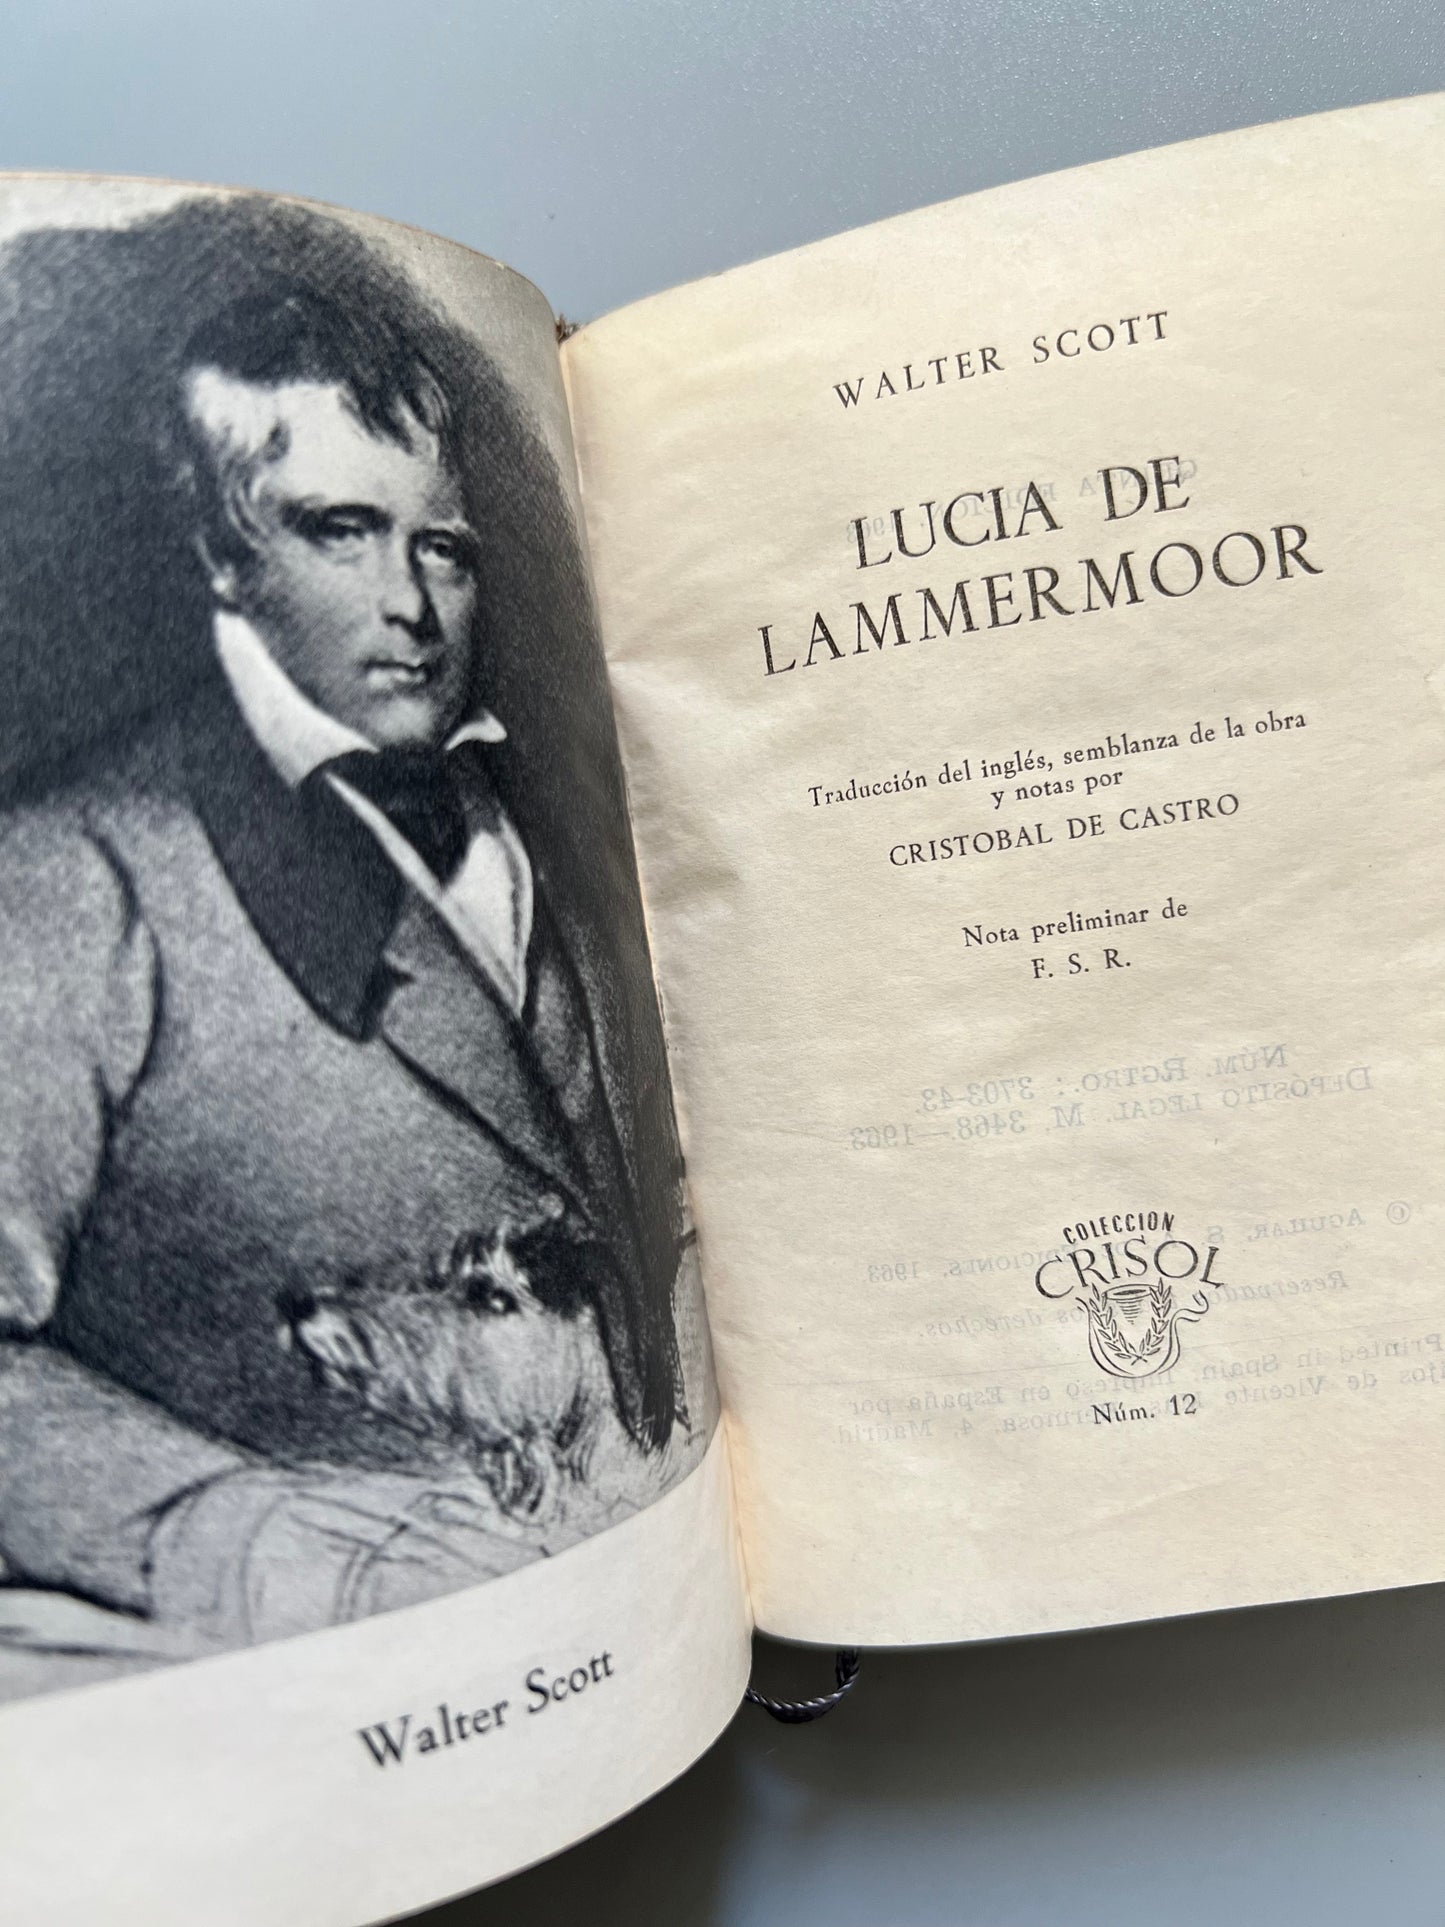 Lucia de Lammermoor, Walter Scott - Colección Crisol nº12, 1963